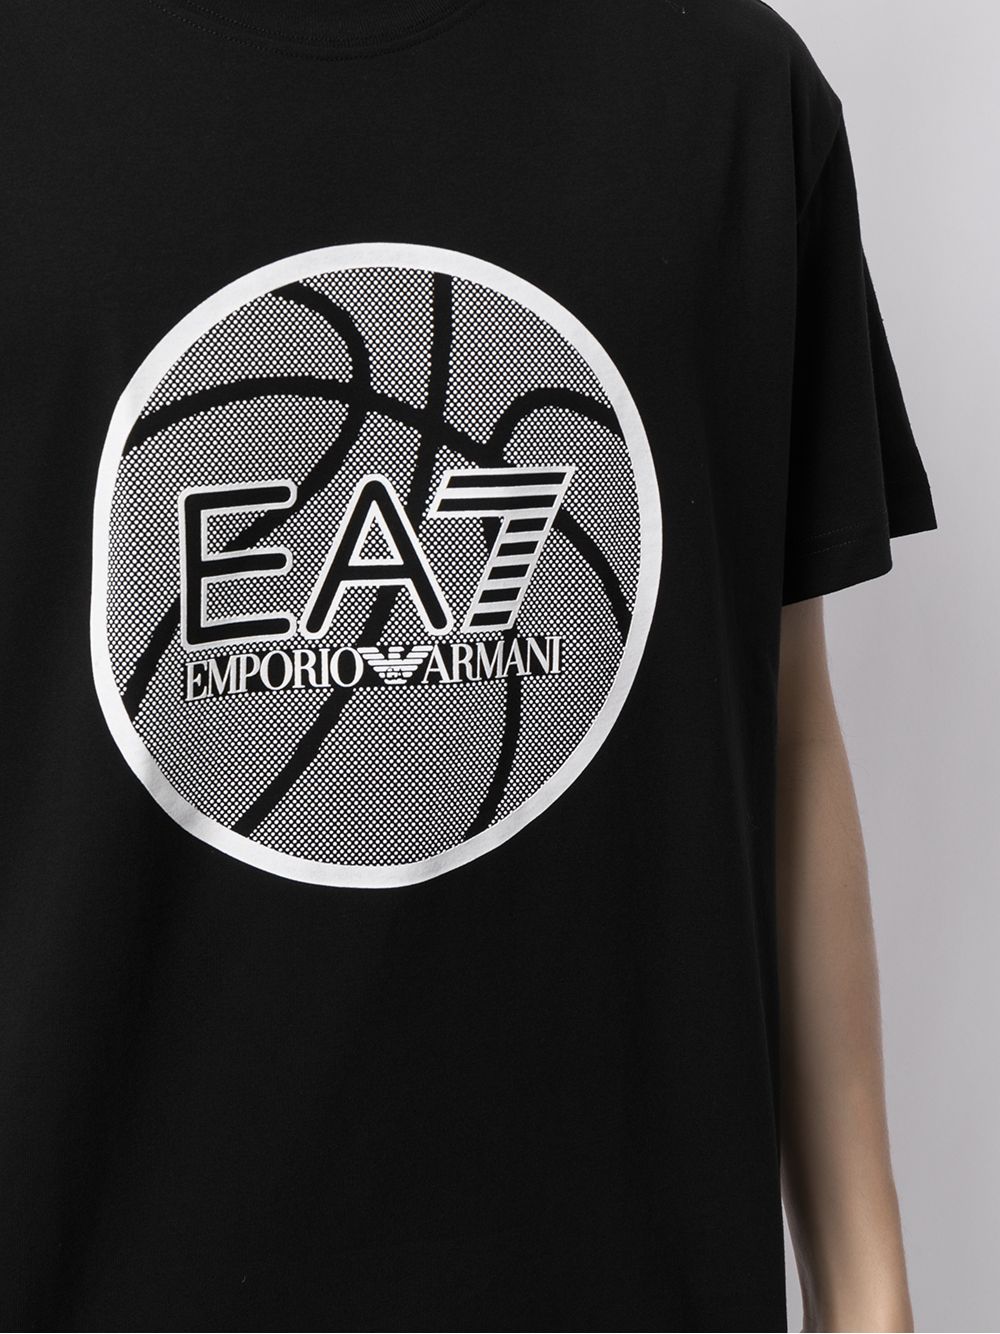 фото Ea7 emporio armani logo-print cotton t-shirt